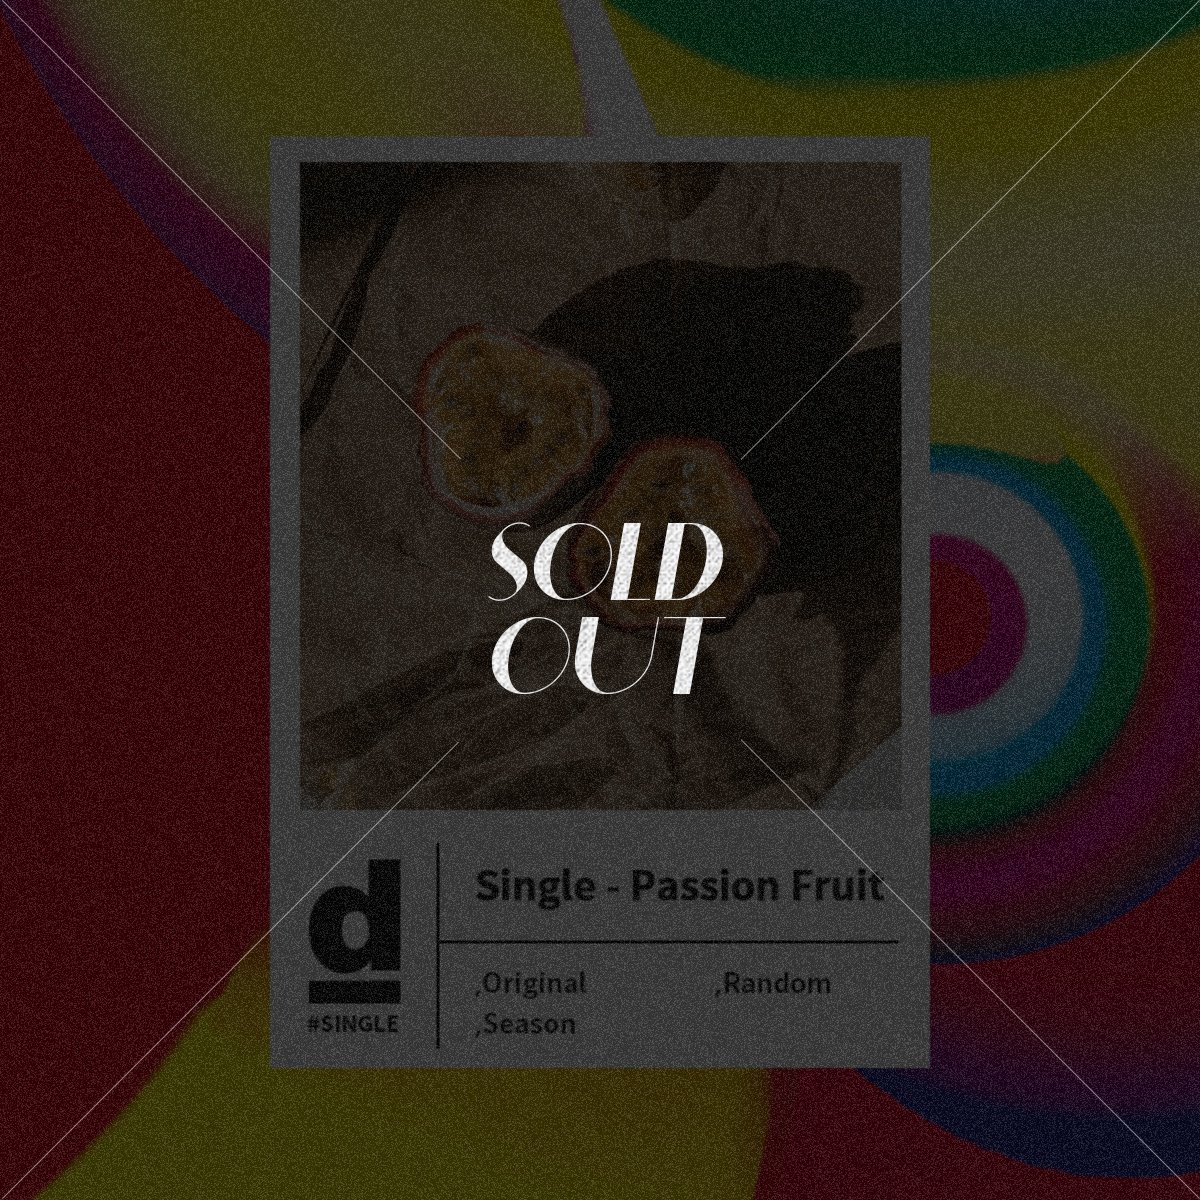 #Single Origin - Passion Fruit